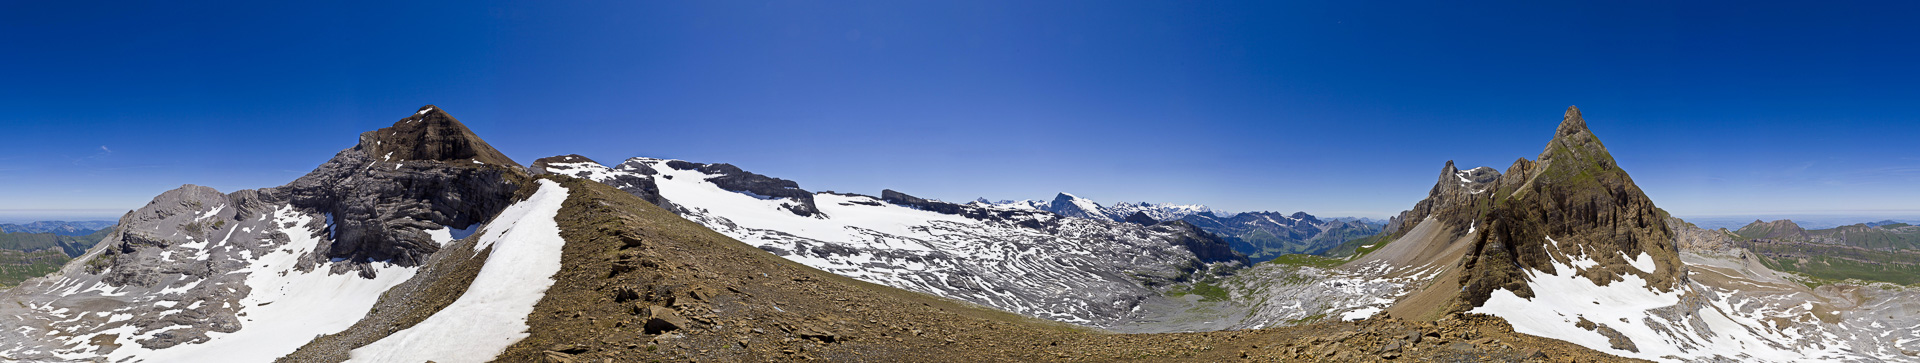 Aussichtsreich gelegener Übergang zwischen Engelberger Rotsock und Ruchstock; in der Bildmitte Titlis und die Berner Alpen.